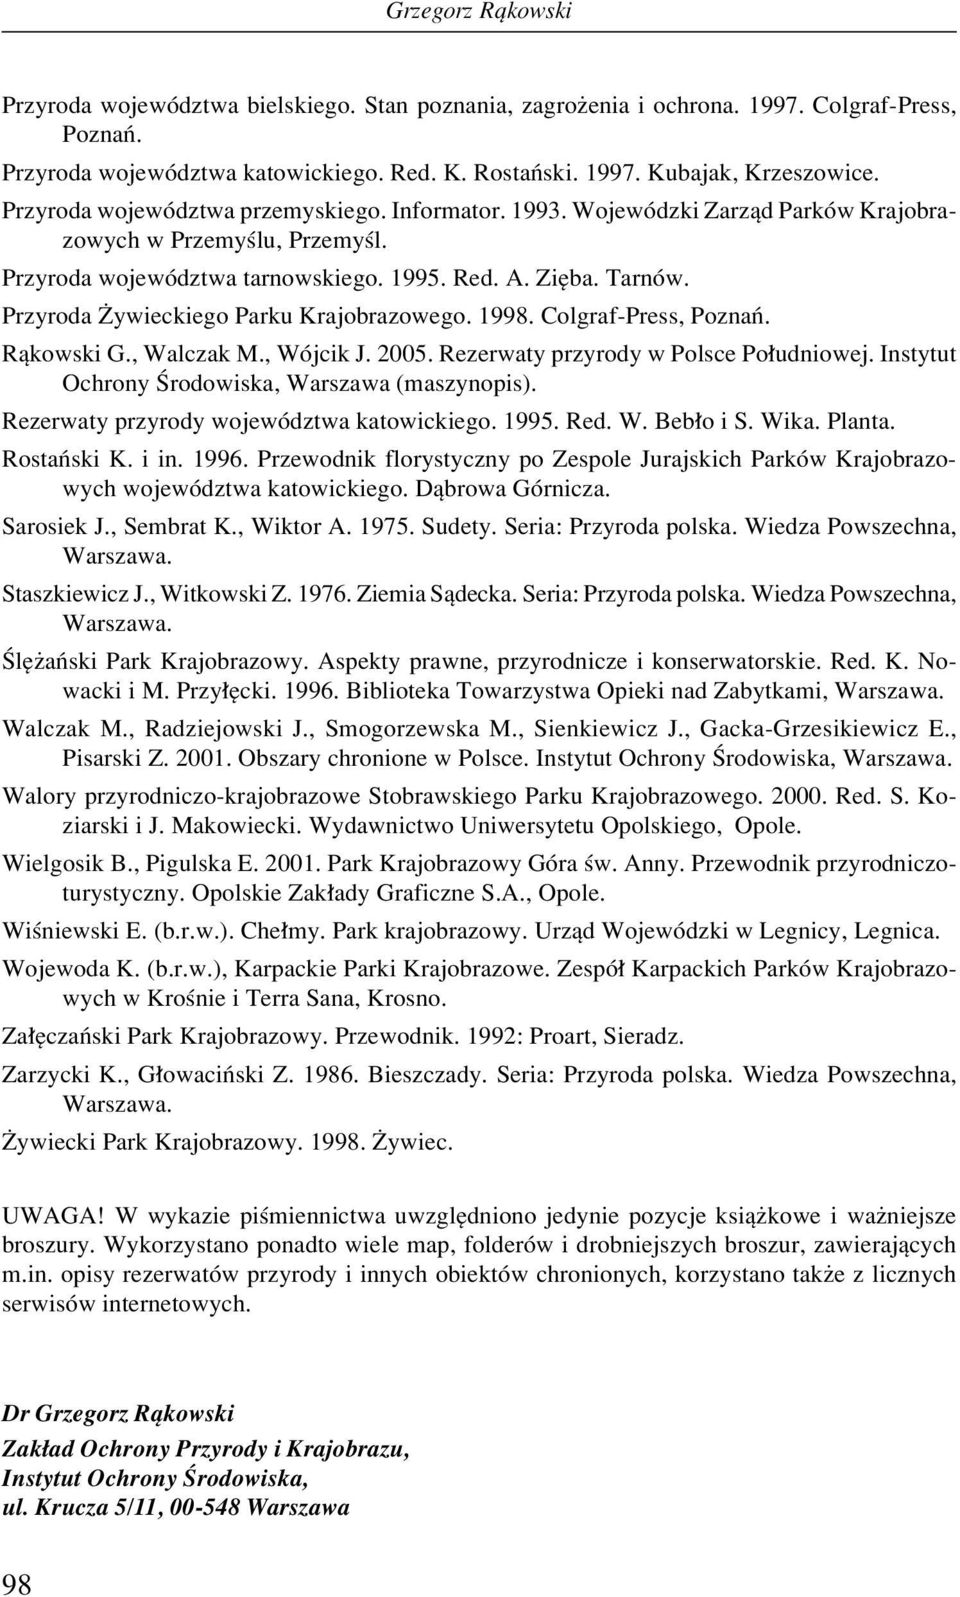 Przyroda Øywieckiego Parku Krajobrazowego. 1998. Colgraf-Press, PoznaÒ. Rπkowski G., Walczak M., WÛjcik J. 2005. Rezerwaty przyrody w Polsce Po udniowej.